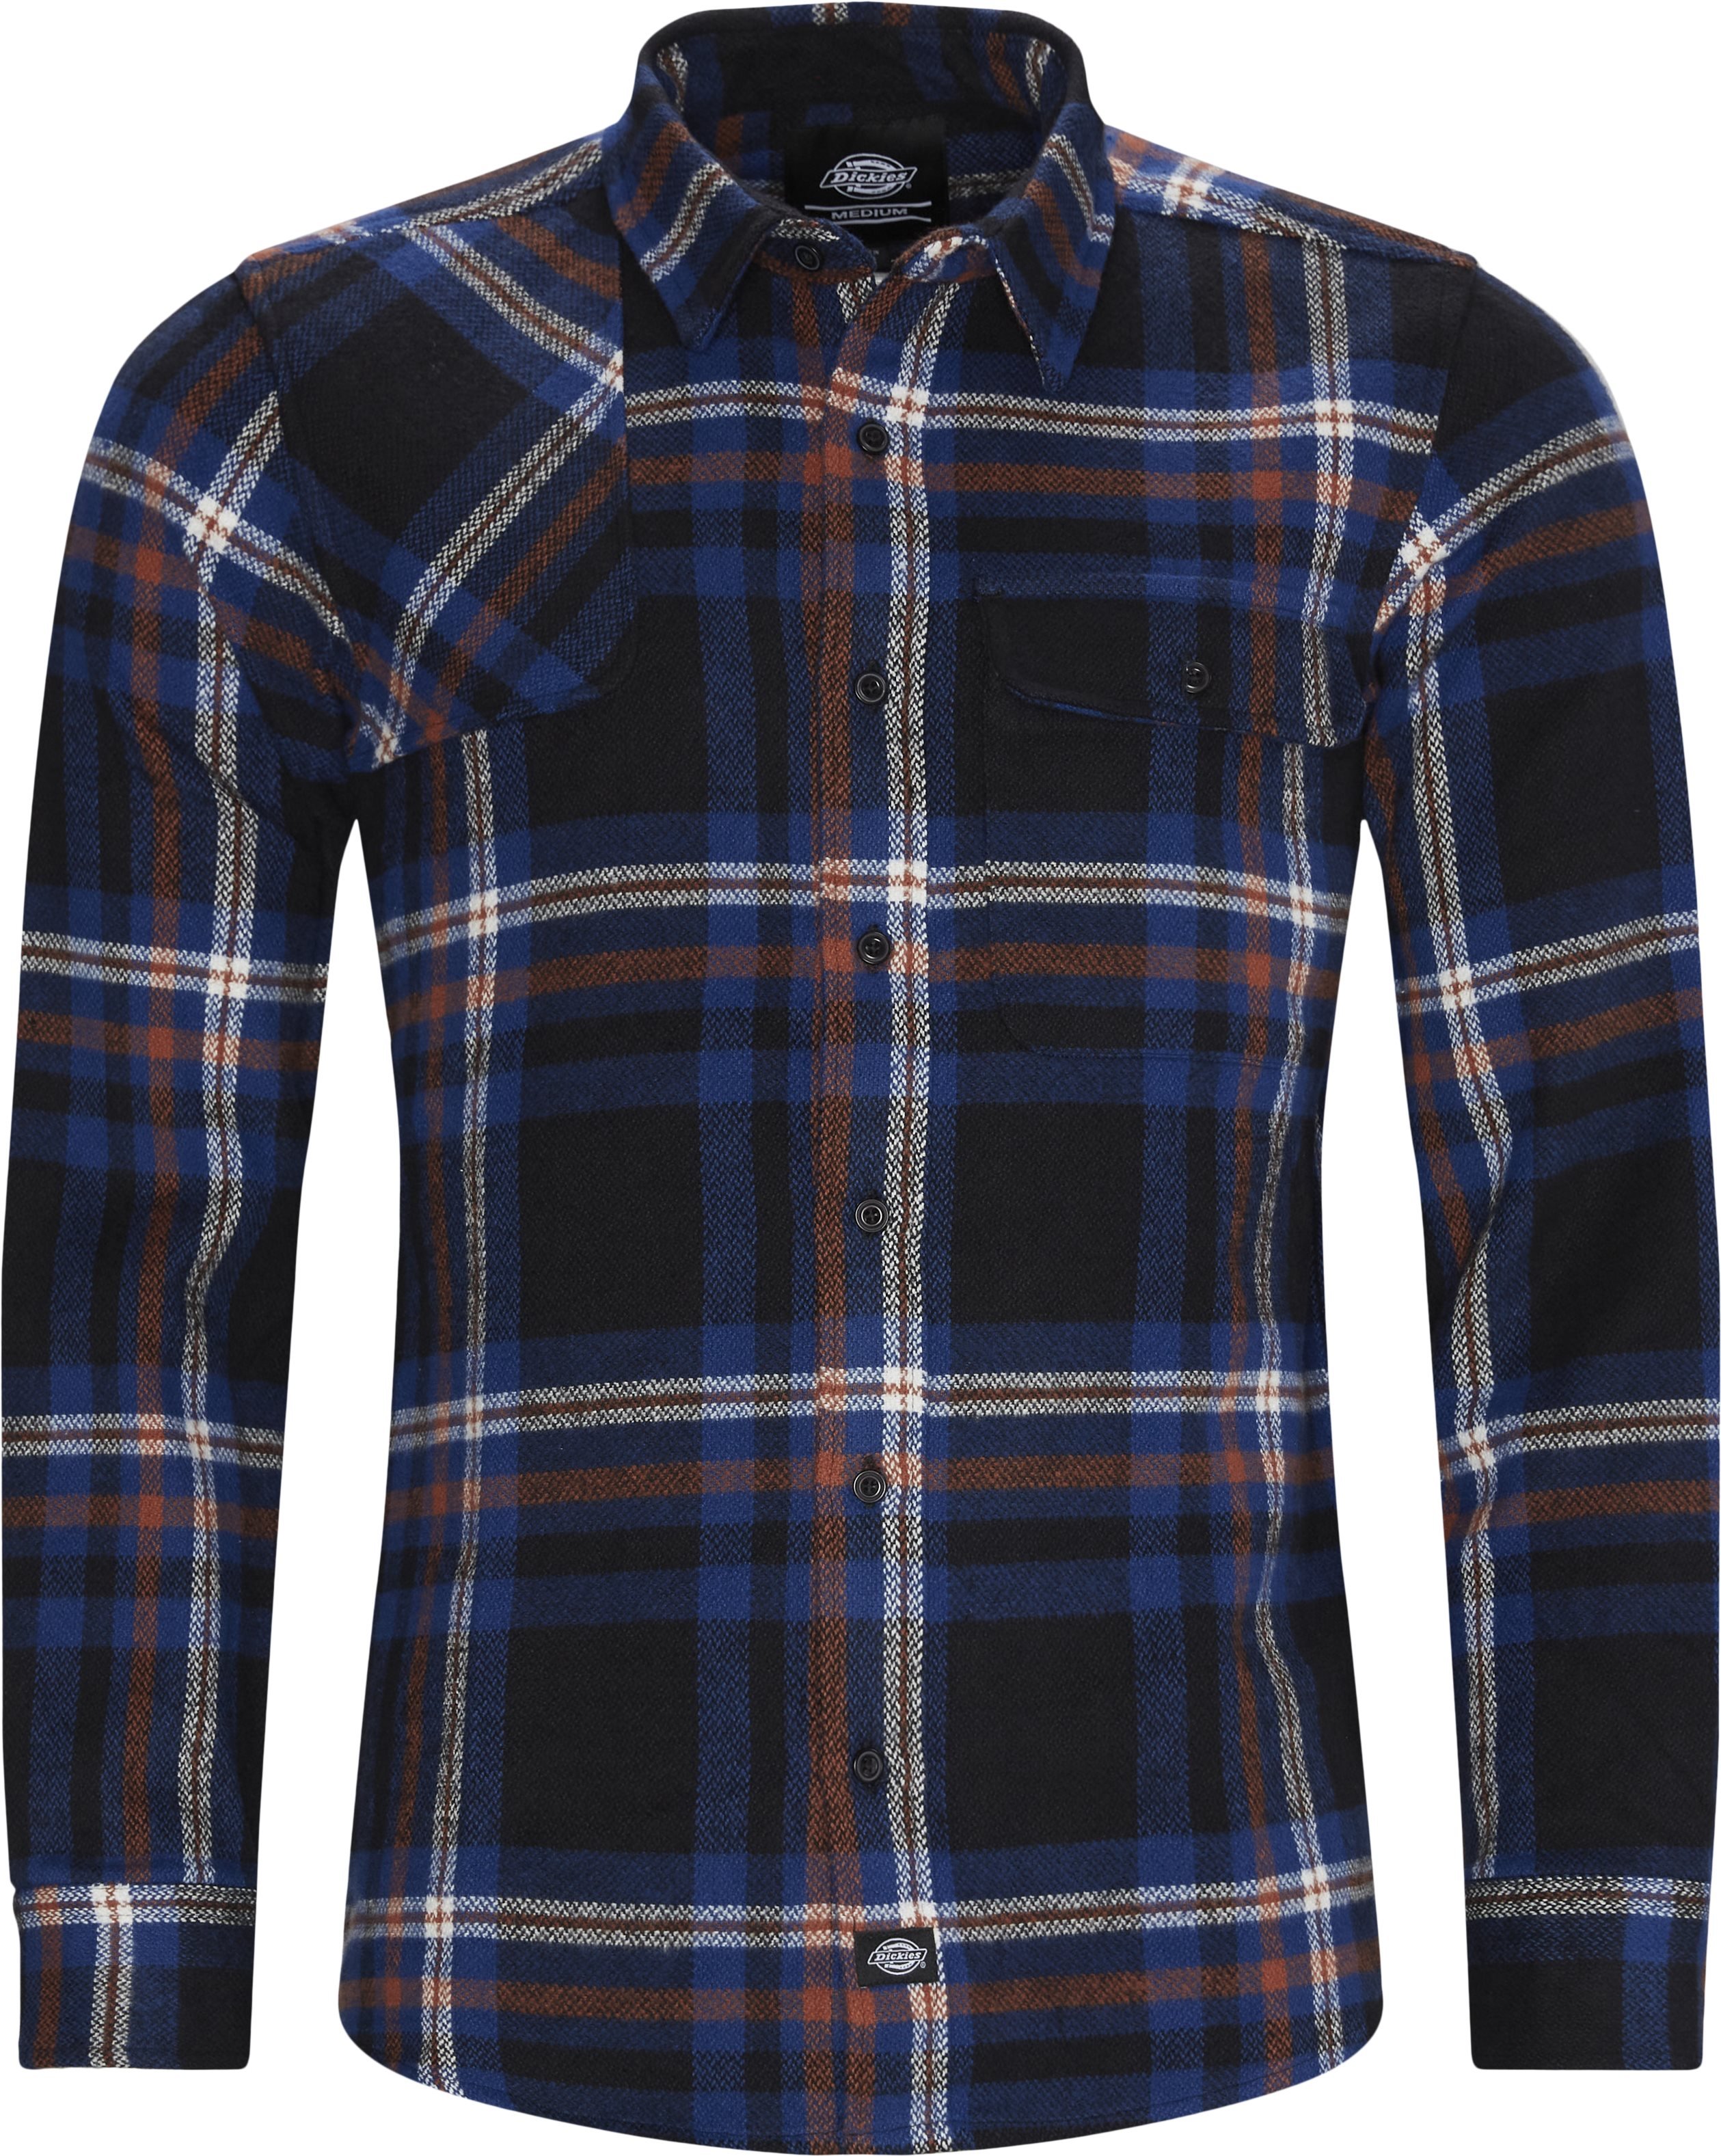 Prestonburg skjorta - Skjortor - Regular fit - Blå